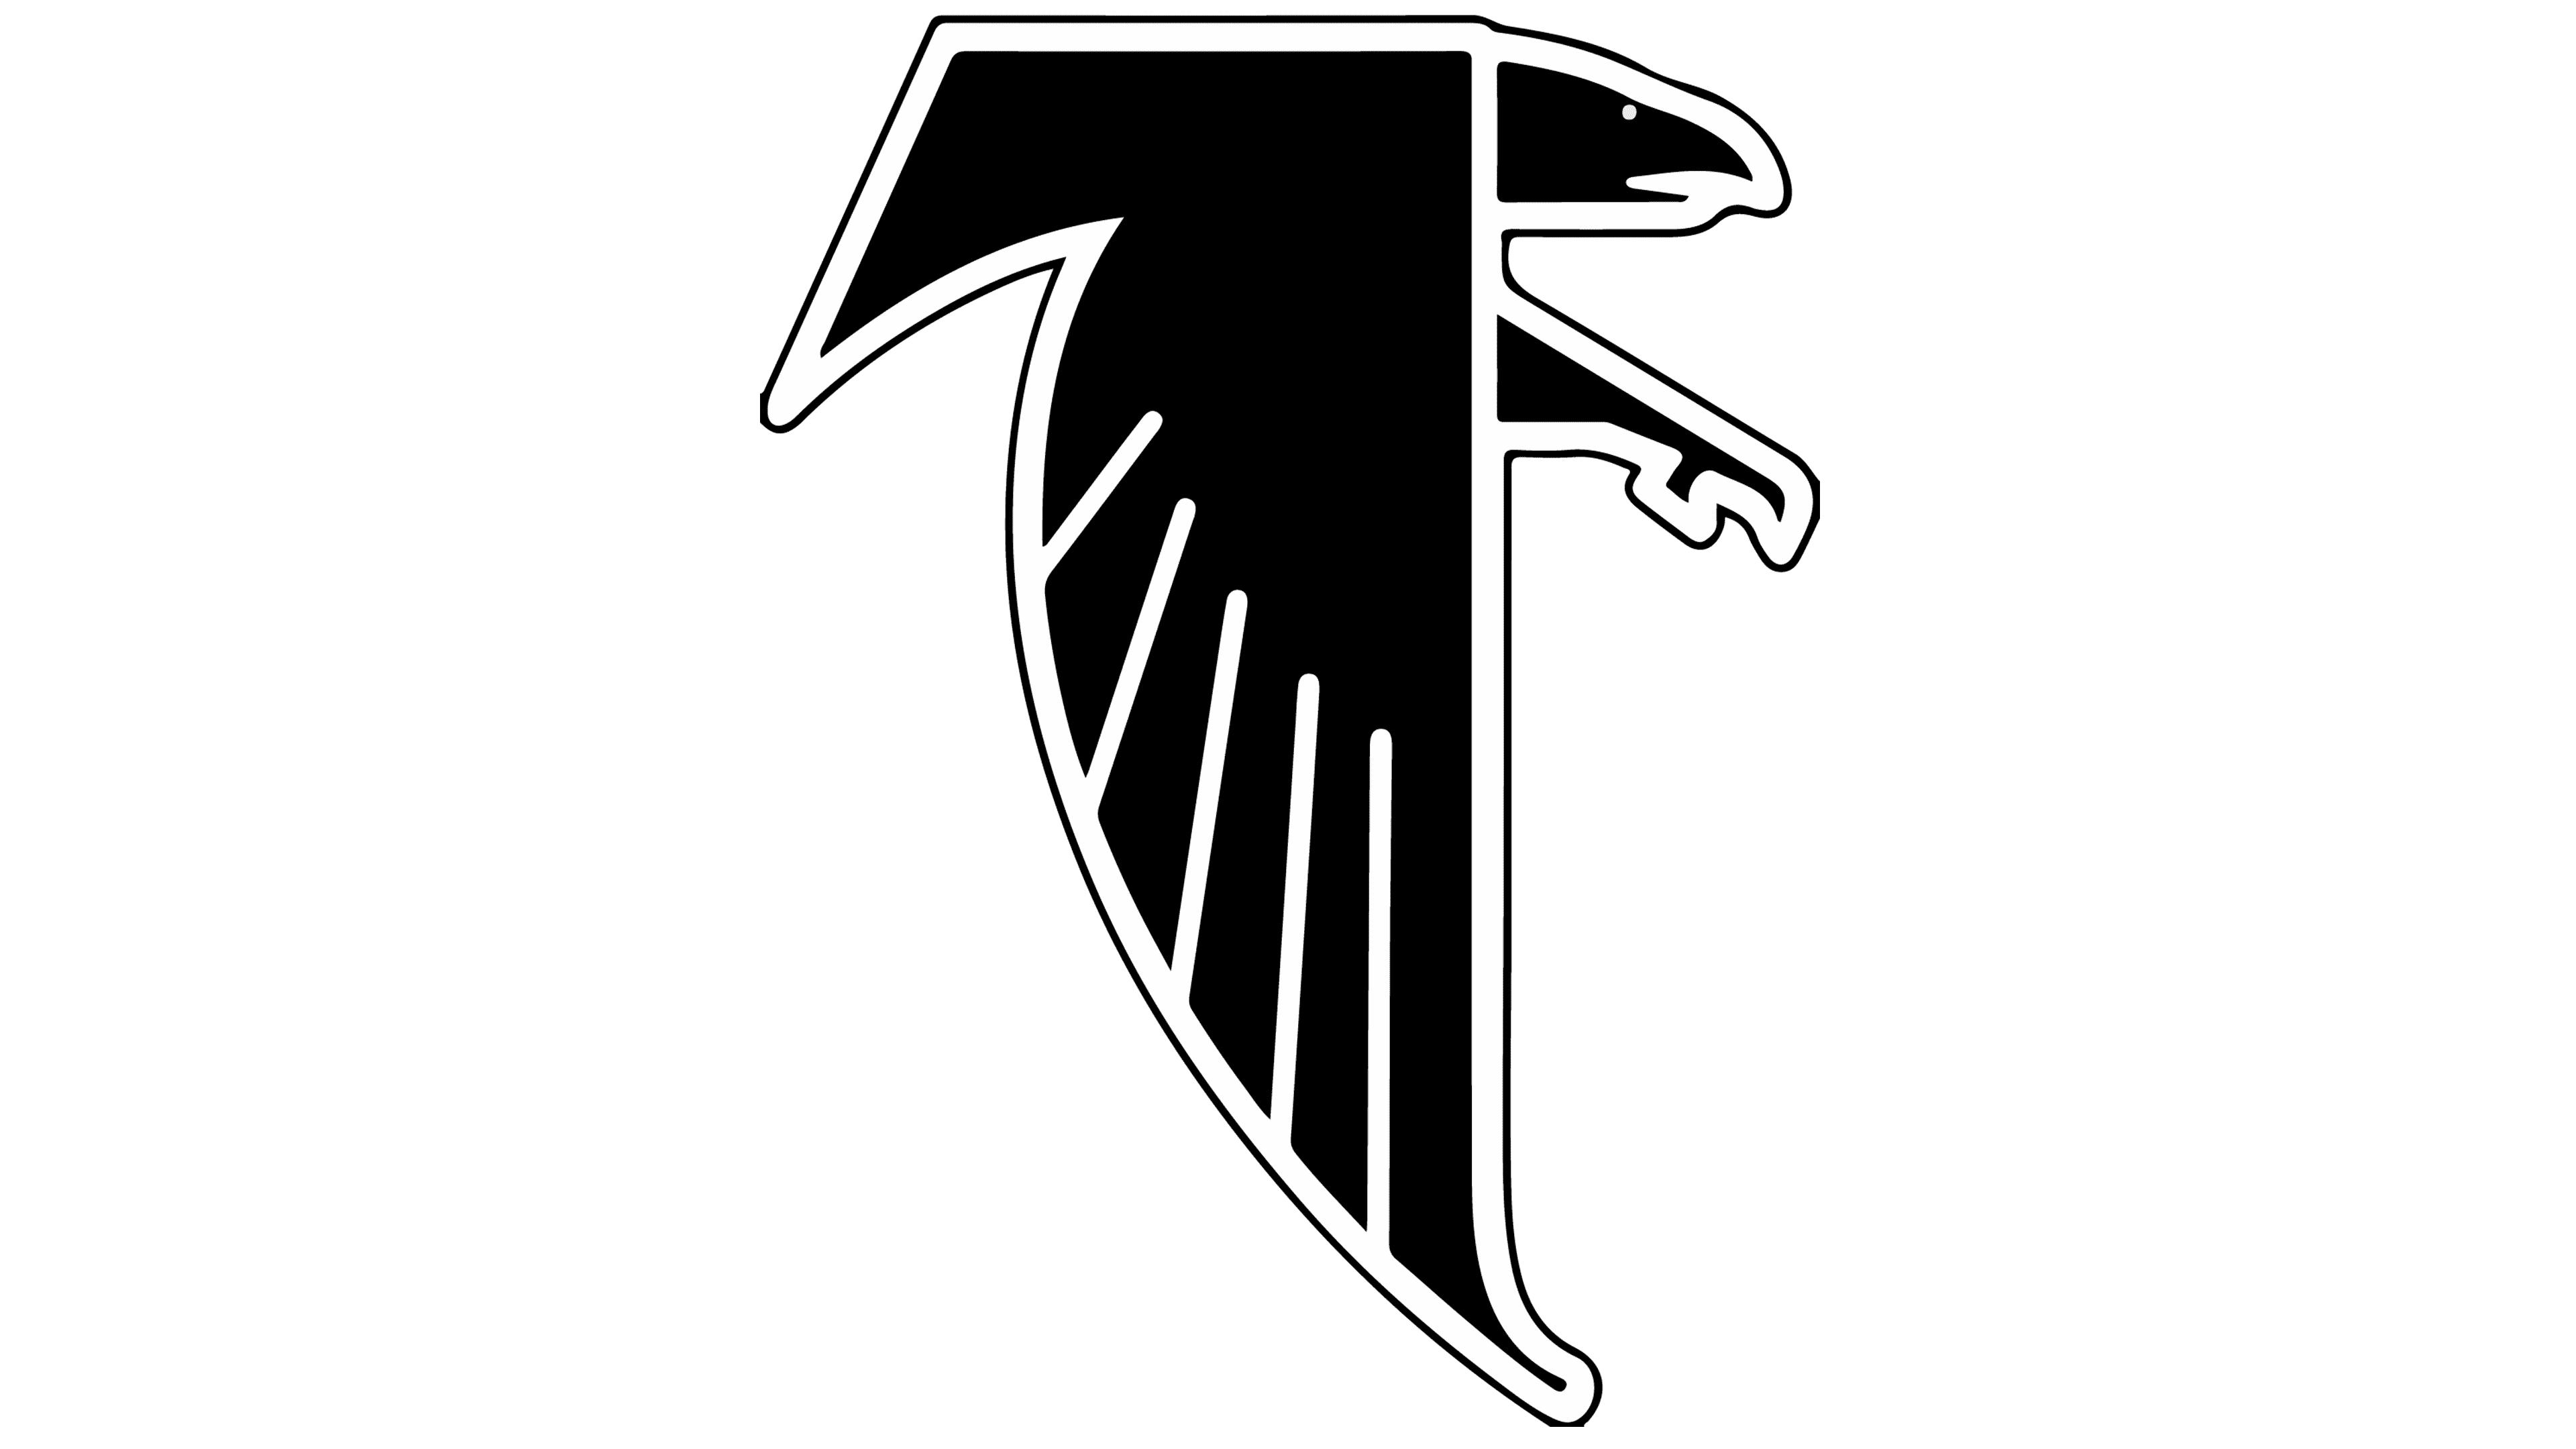 falcon logo melee